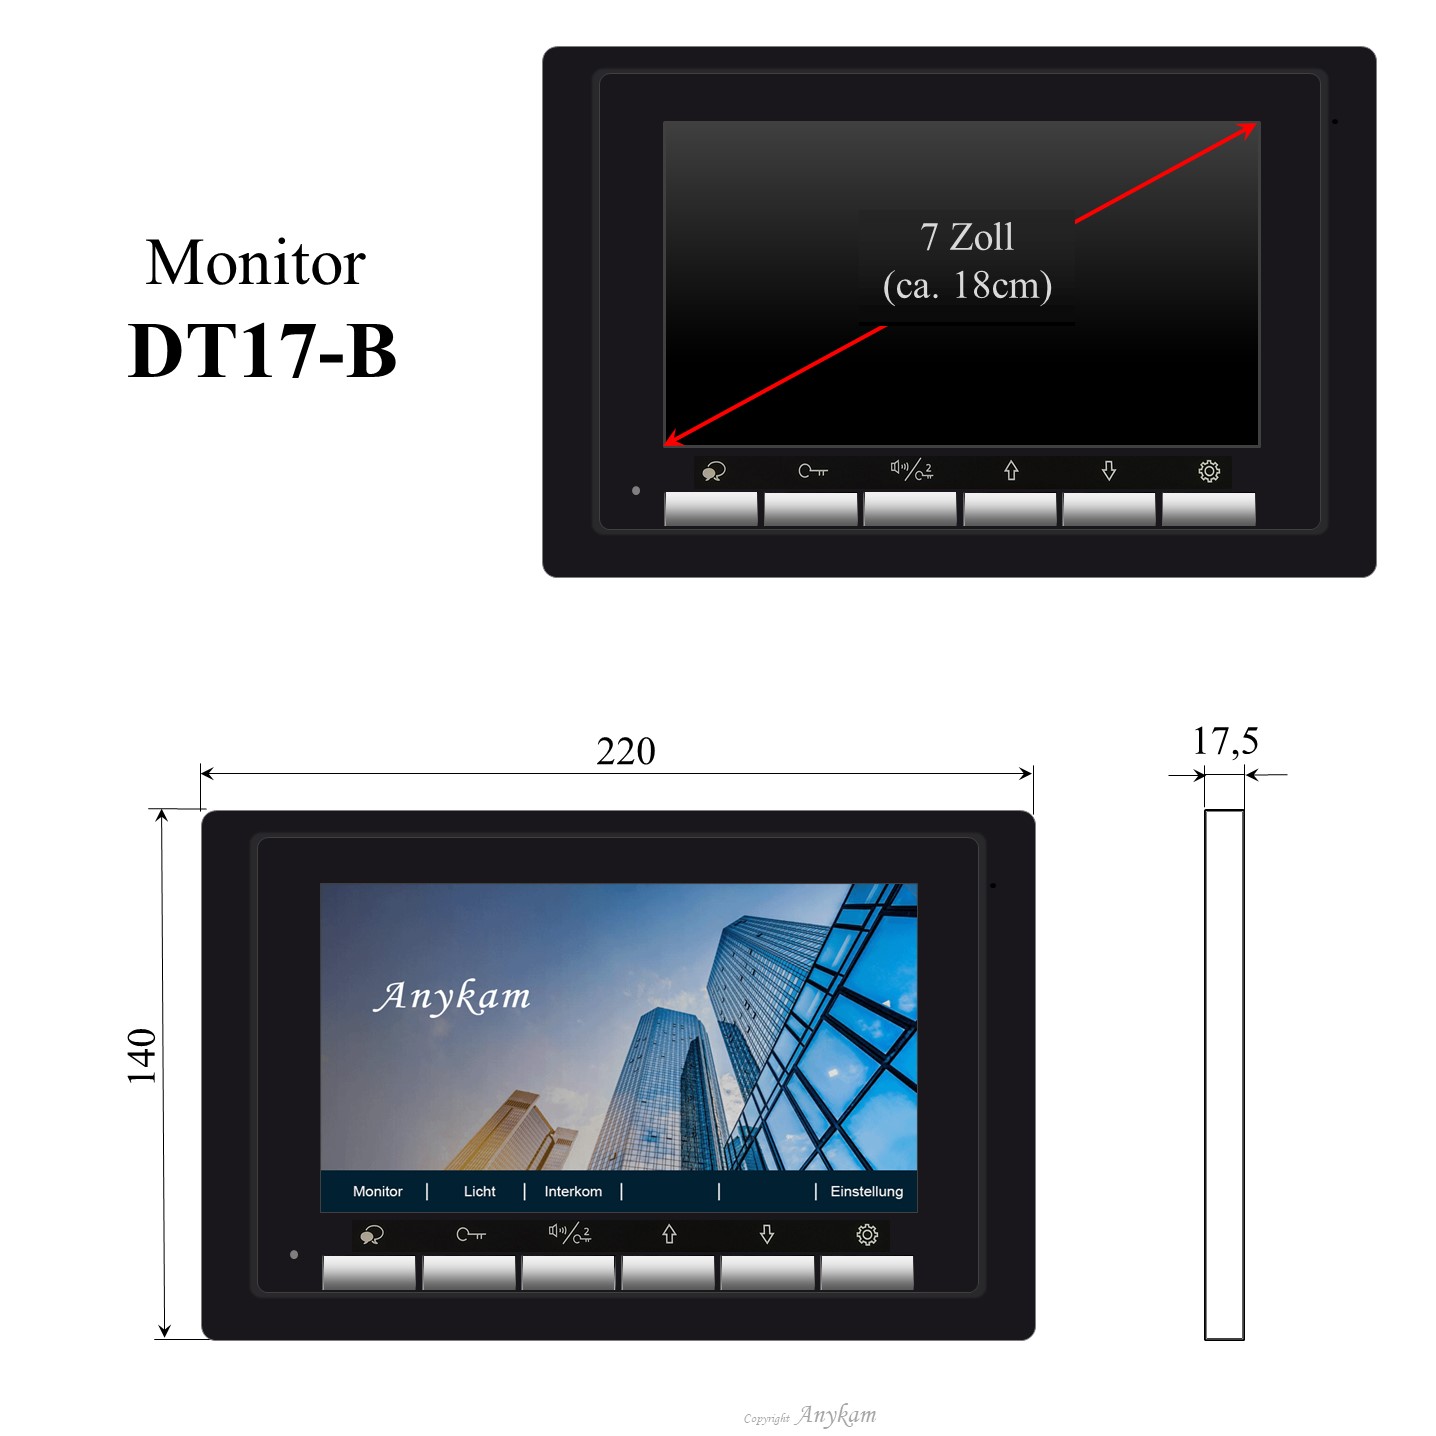 Monitor DT17-B, Innenstation der Videosprechanlage mit 2Draht Technik